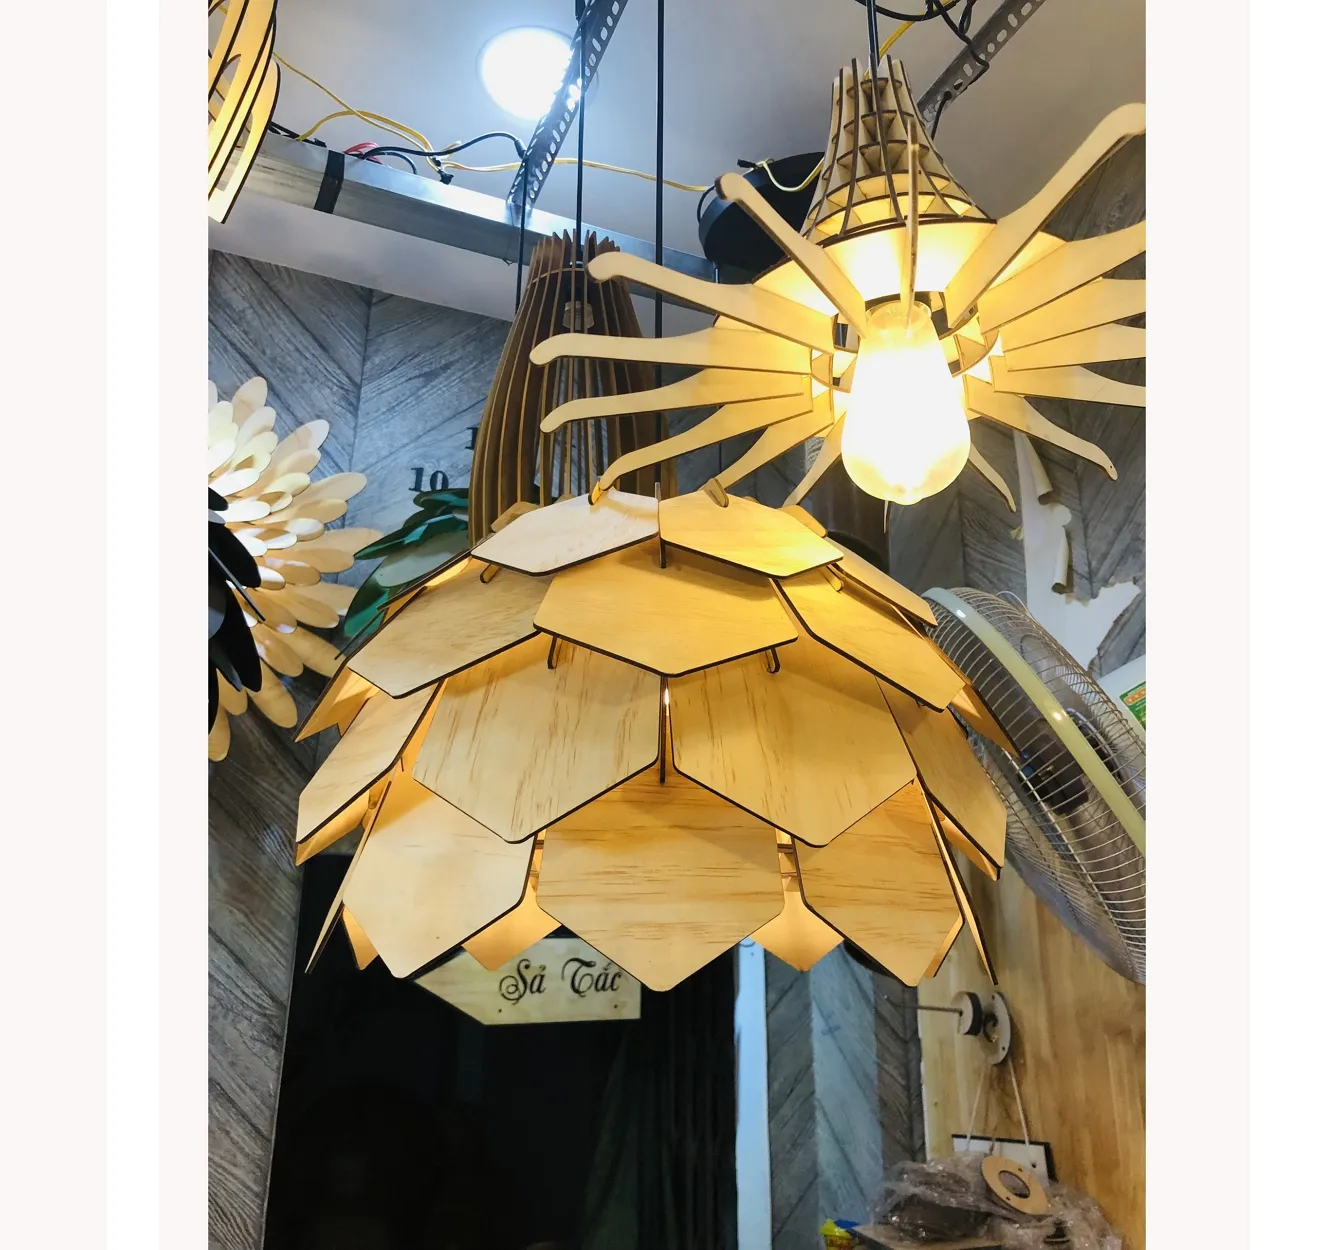 Premium quality Vietnam home decoration wooden lamps wooden pendant light